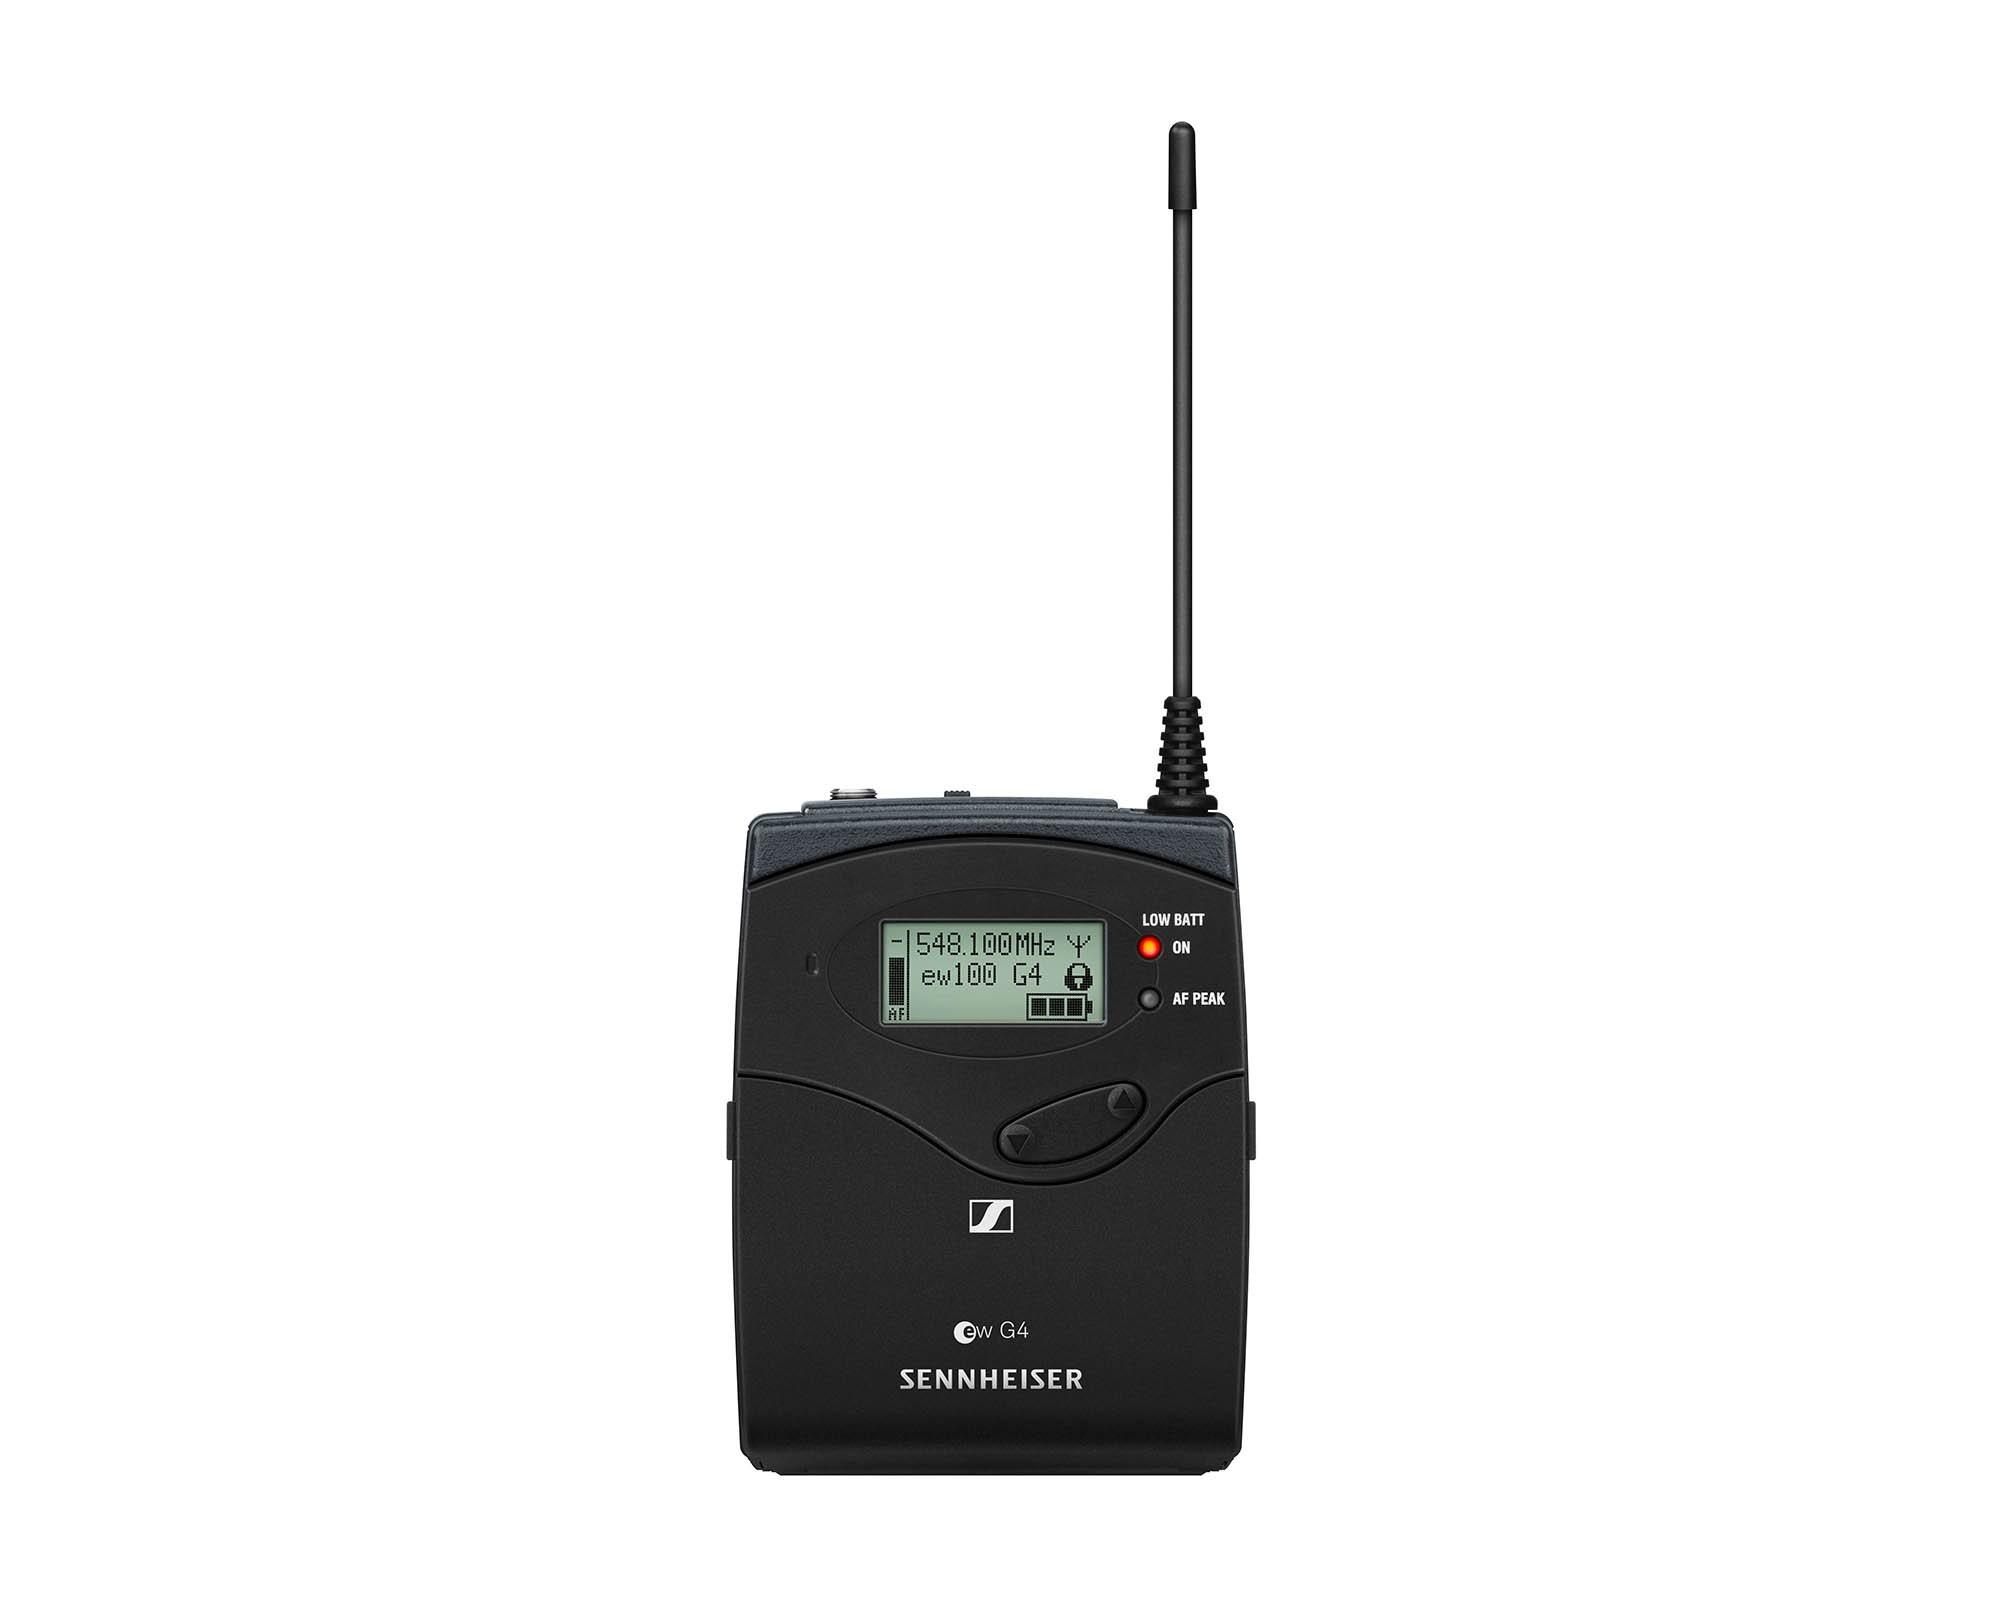 Sennheiser SK100 G4 transmitter